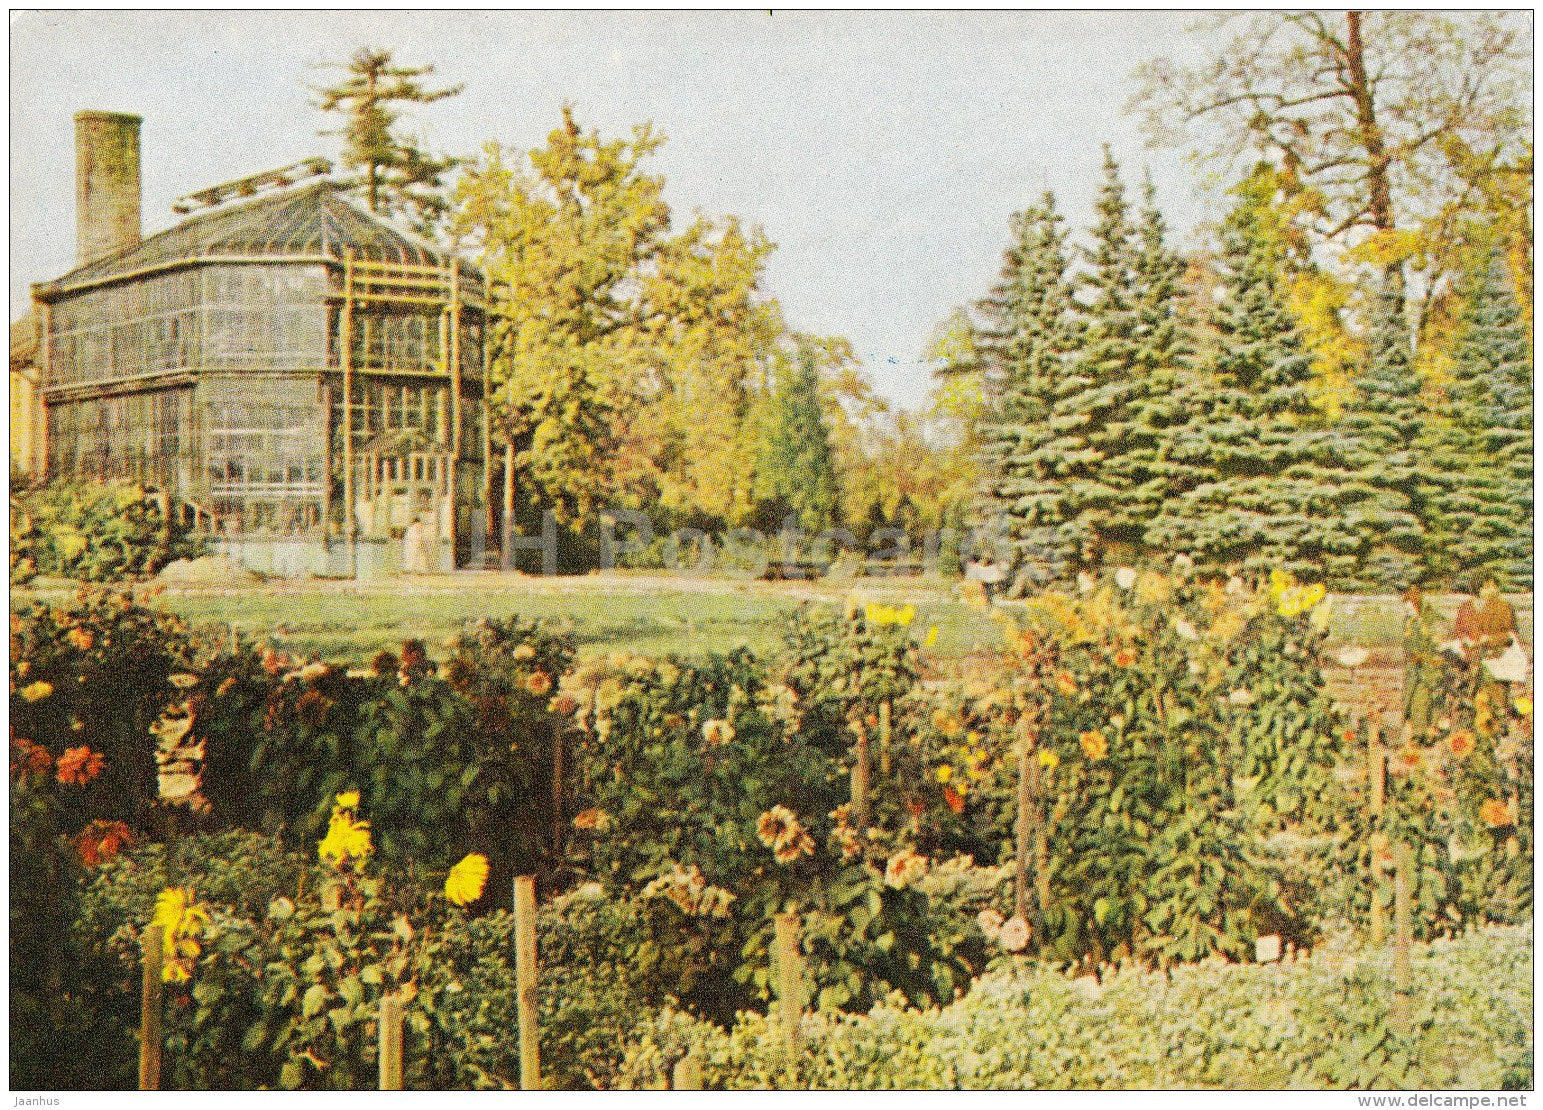 Botanical Gardens - Riga - Latvia USSR - unused - JH Postcards